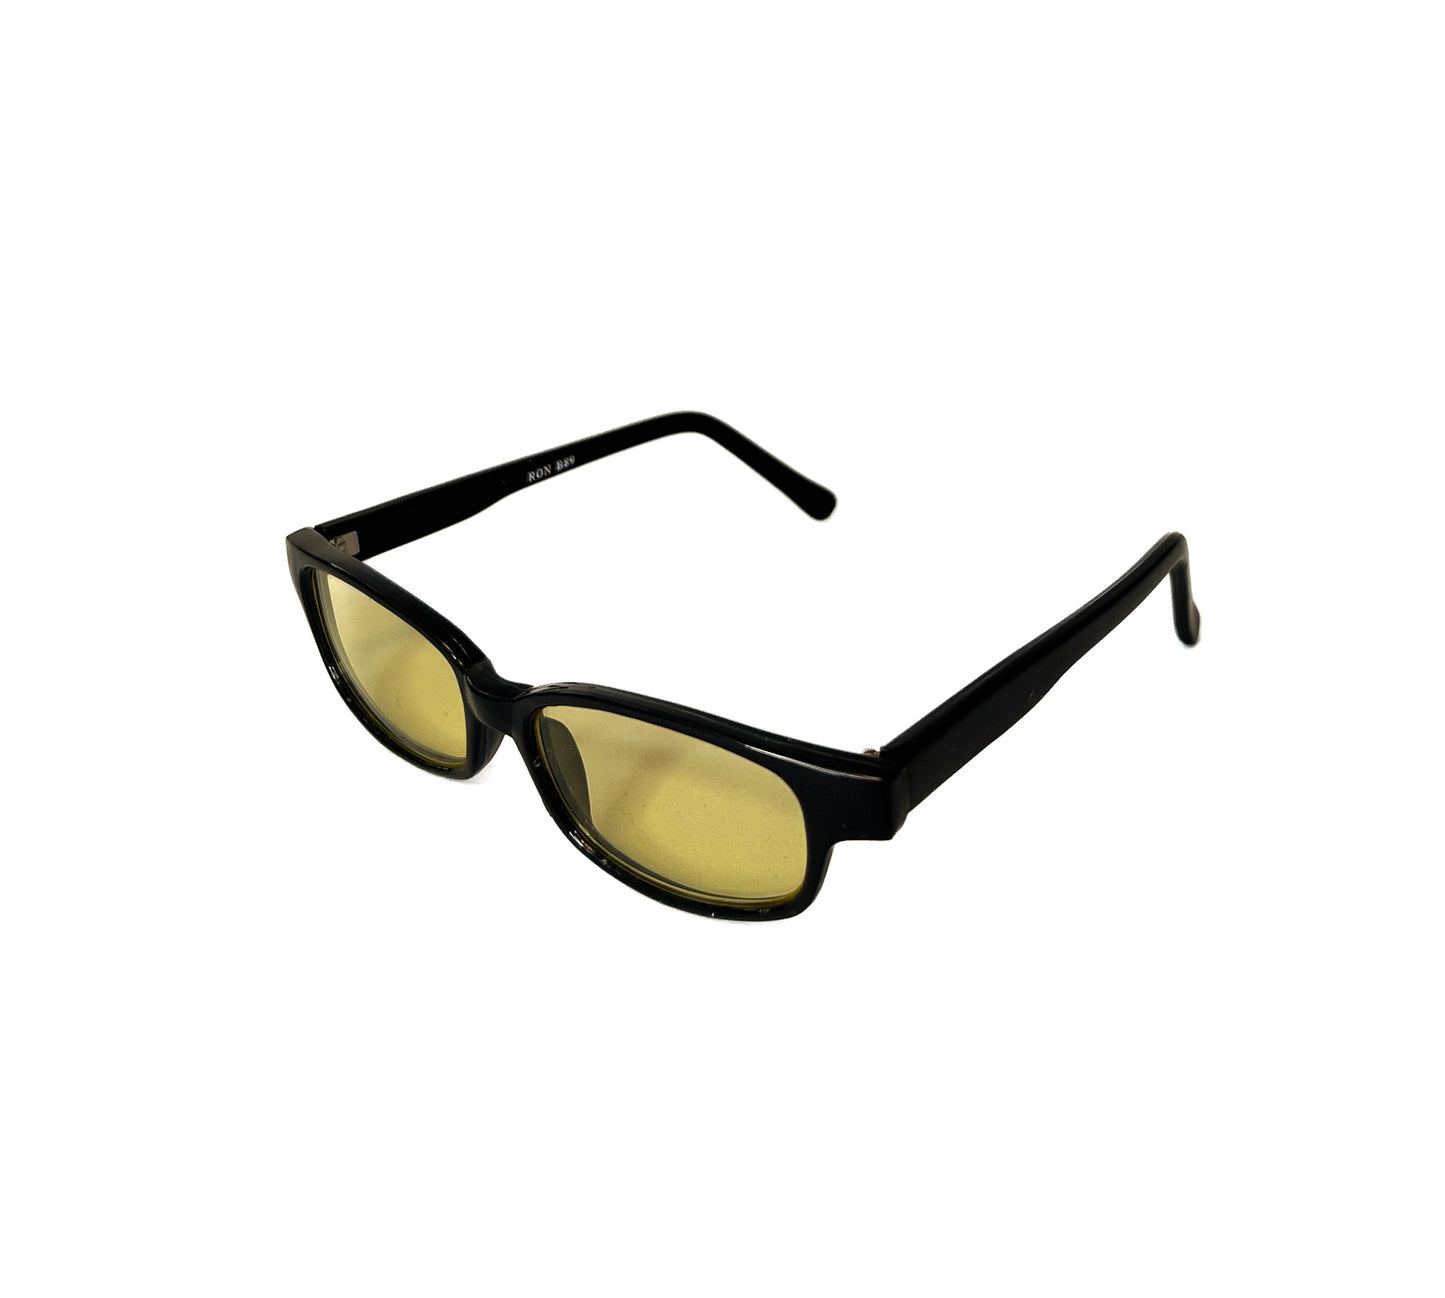 SX Square yellow retro sunglasses with dark handle